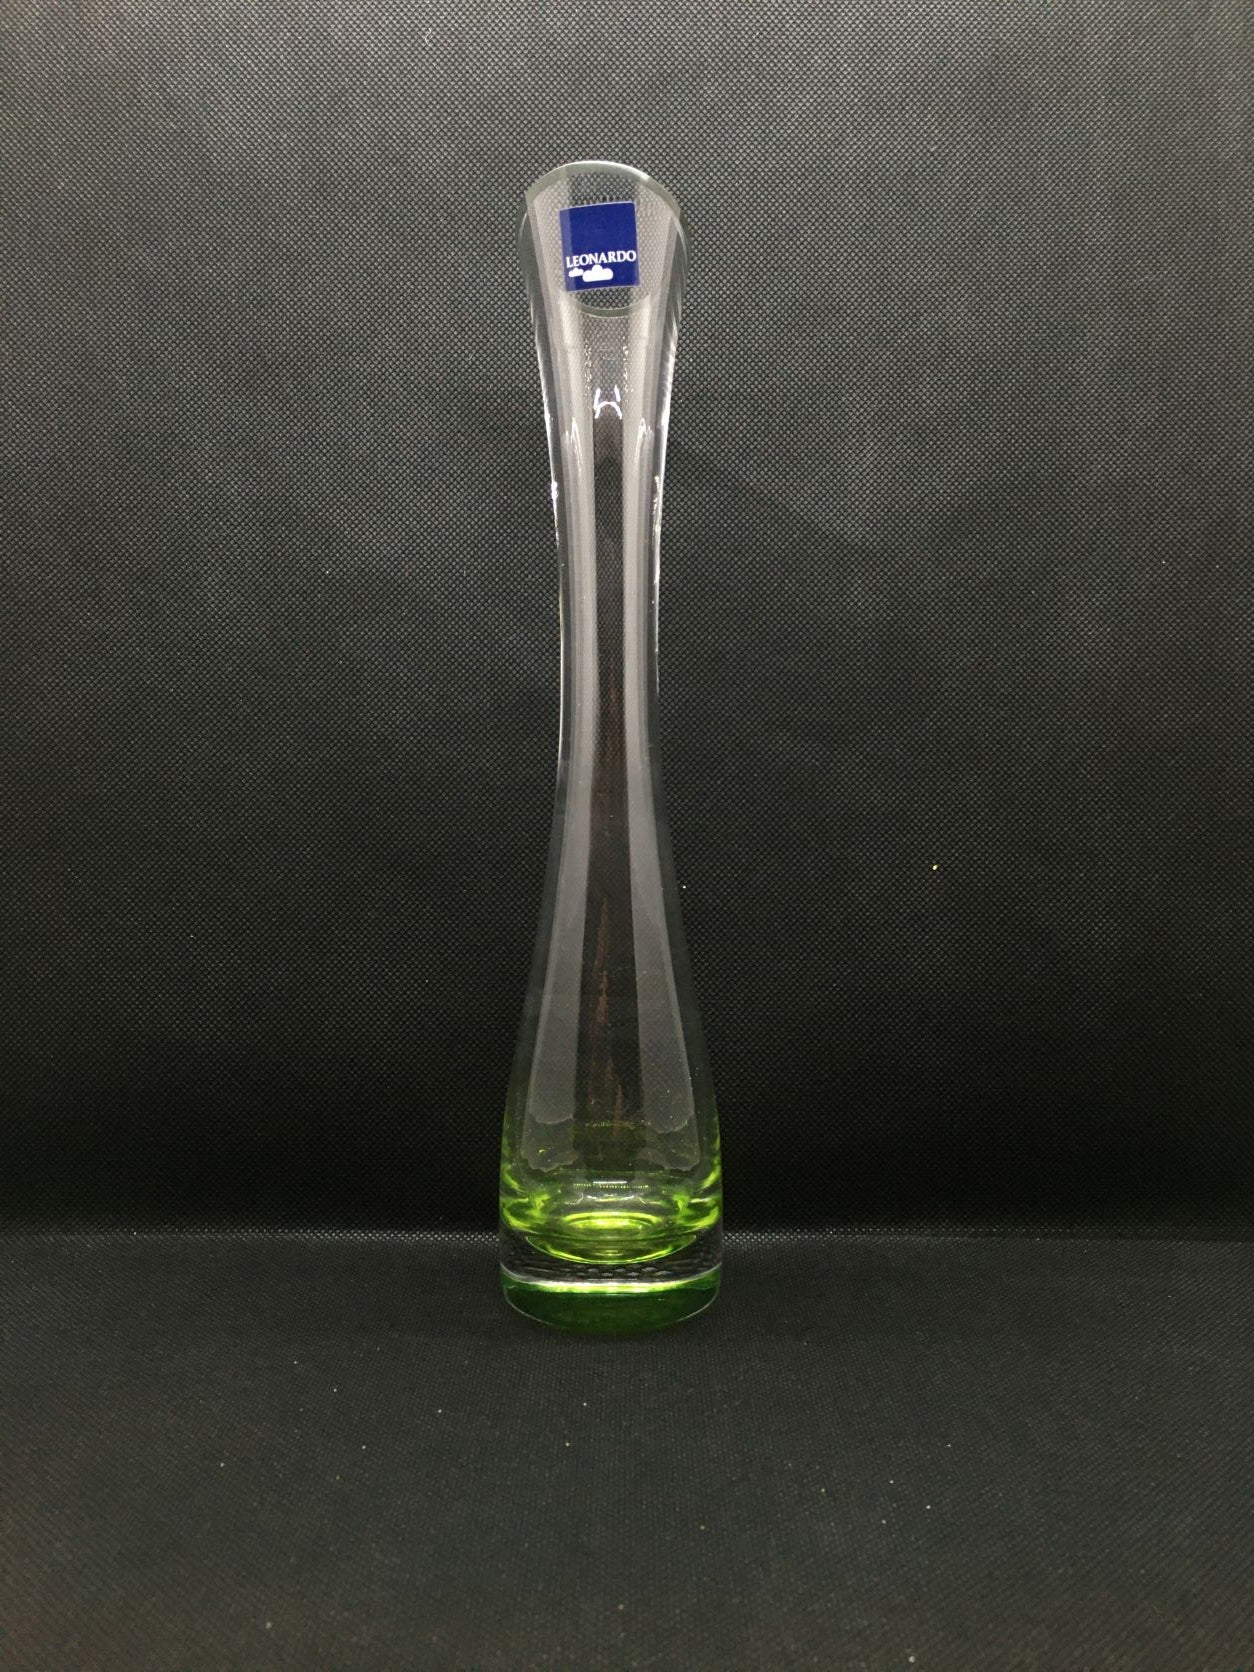 Vasetto monofiore in vetro trasparente con base di colore verde, collo stretto e apertura allargata con taglio obliquo.  Dimensioni: h 27 x 5 cm